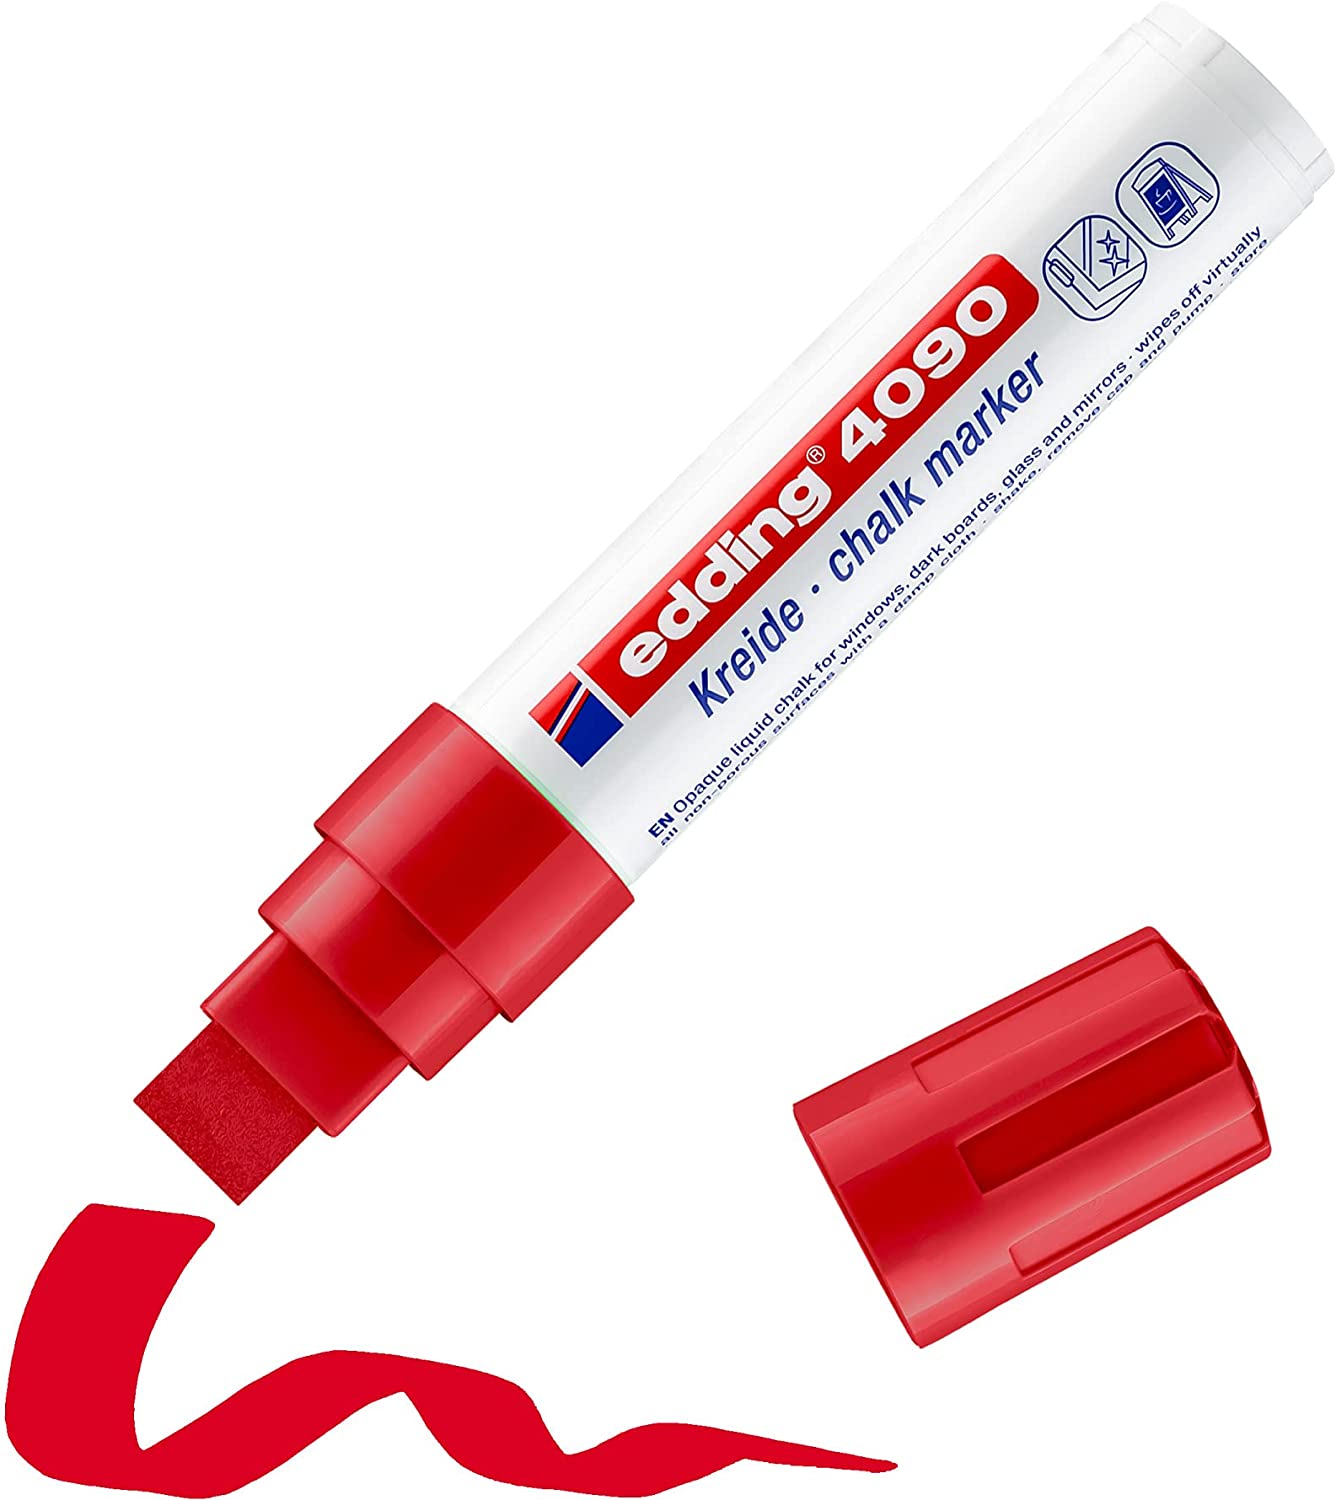 Edding 4090 Marqueur craie liquide - Pointe biseautée - Trait entre 4 et 15 mm - Odeur neutre - Couleur rouge